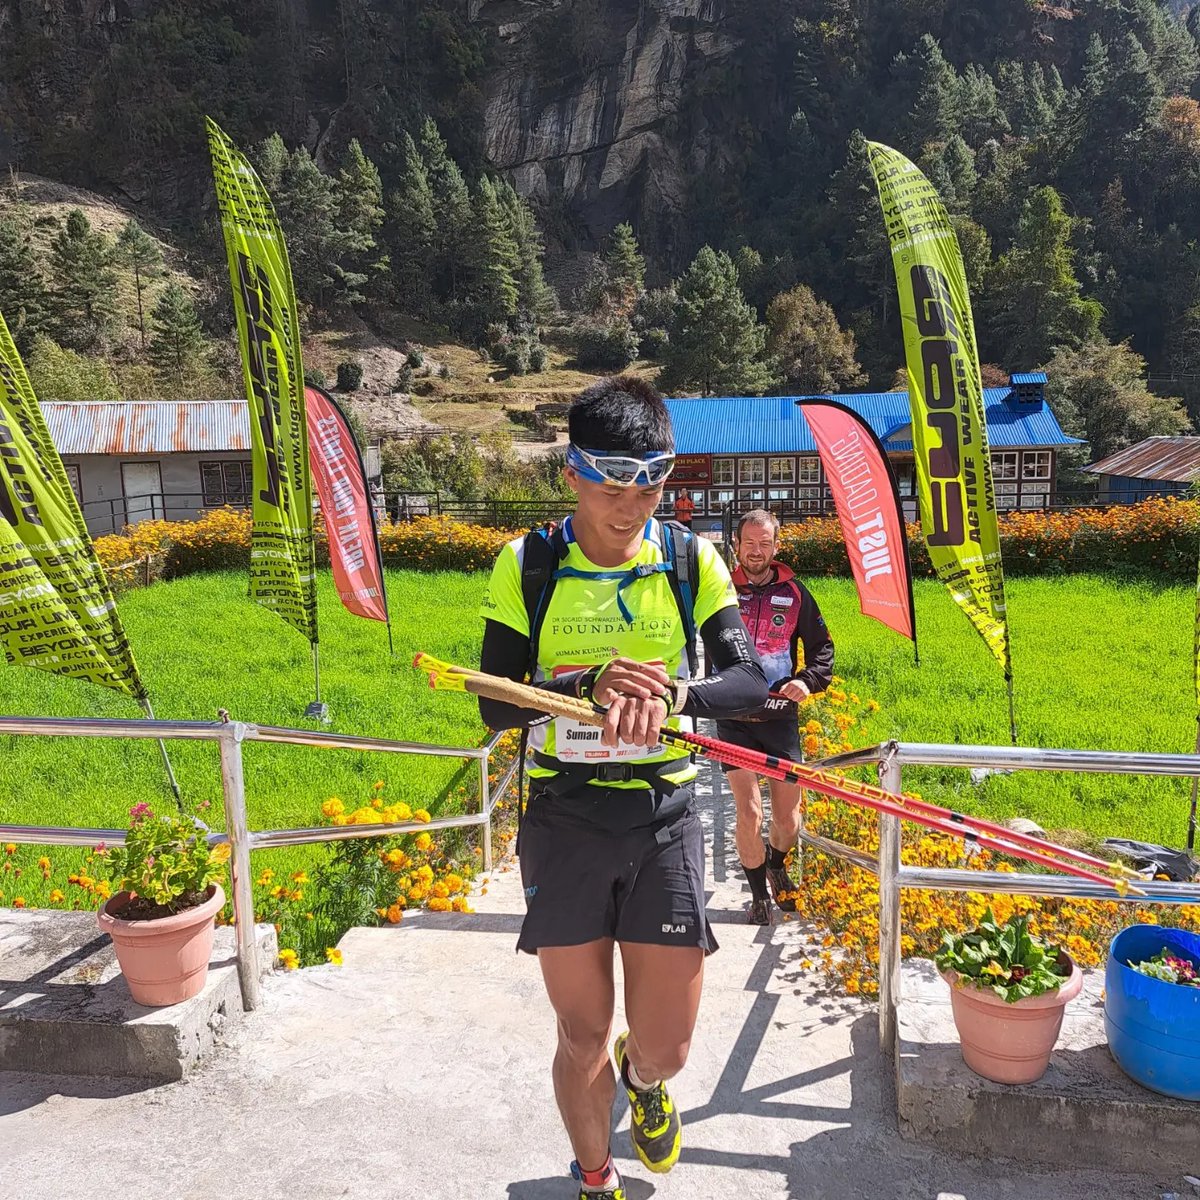 Summan Kulung Rai (TUGA), lider provisional de la 11a edición de la Everest Trail Race by TUGA ACTIVE WEAR, entra en segunda posición en la cusrta etapa, detras del español Marc Ollé.